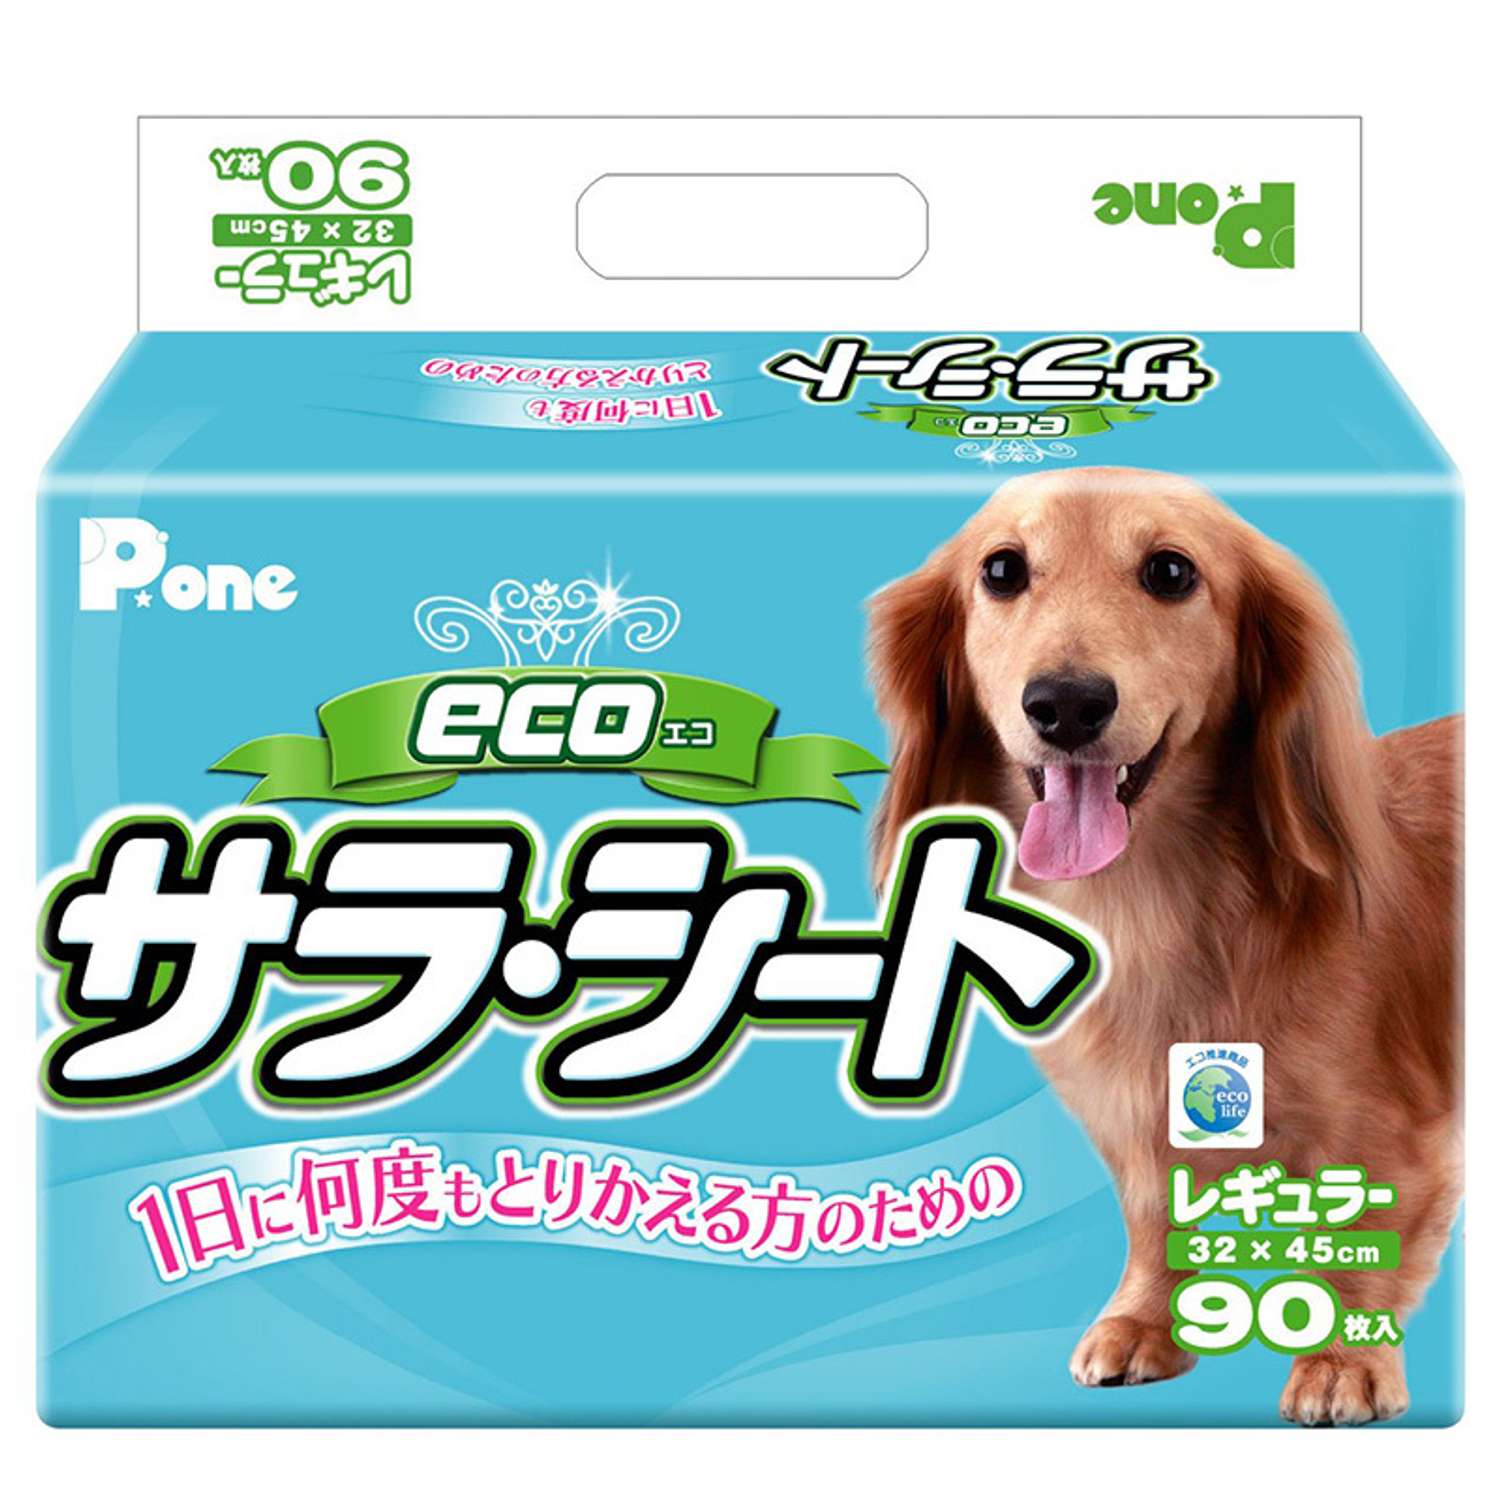 Пеленки для собак P.One Эко 3слойные с антибактериальным наполнением средние 90шт - фото 1